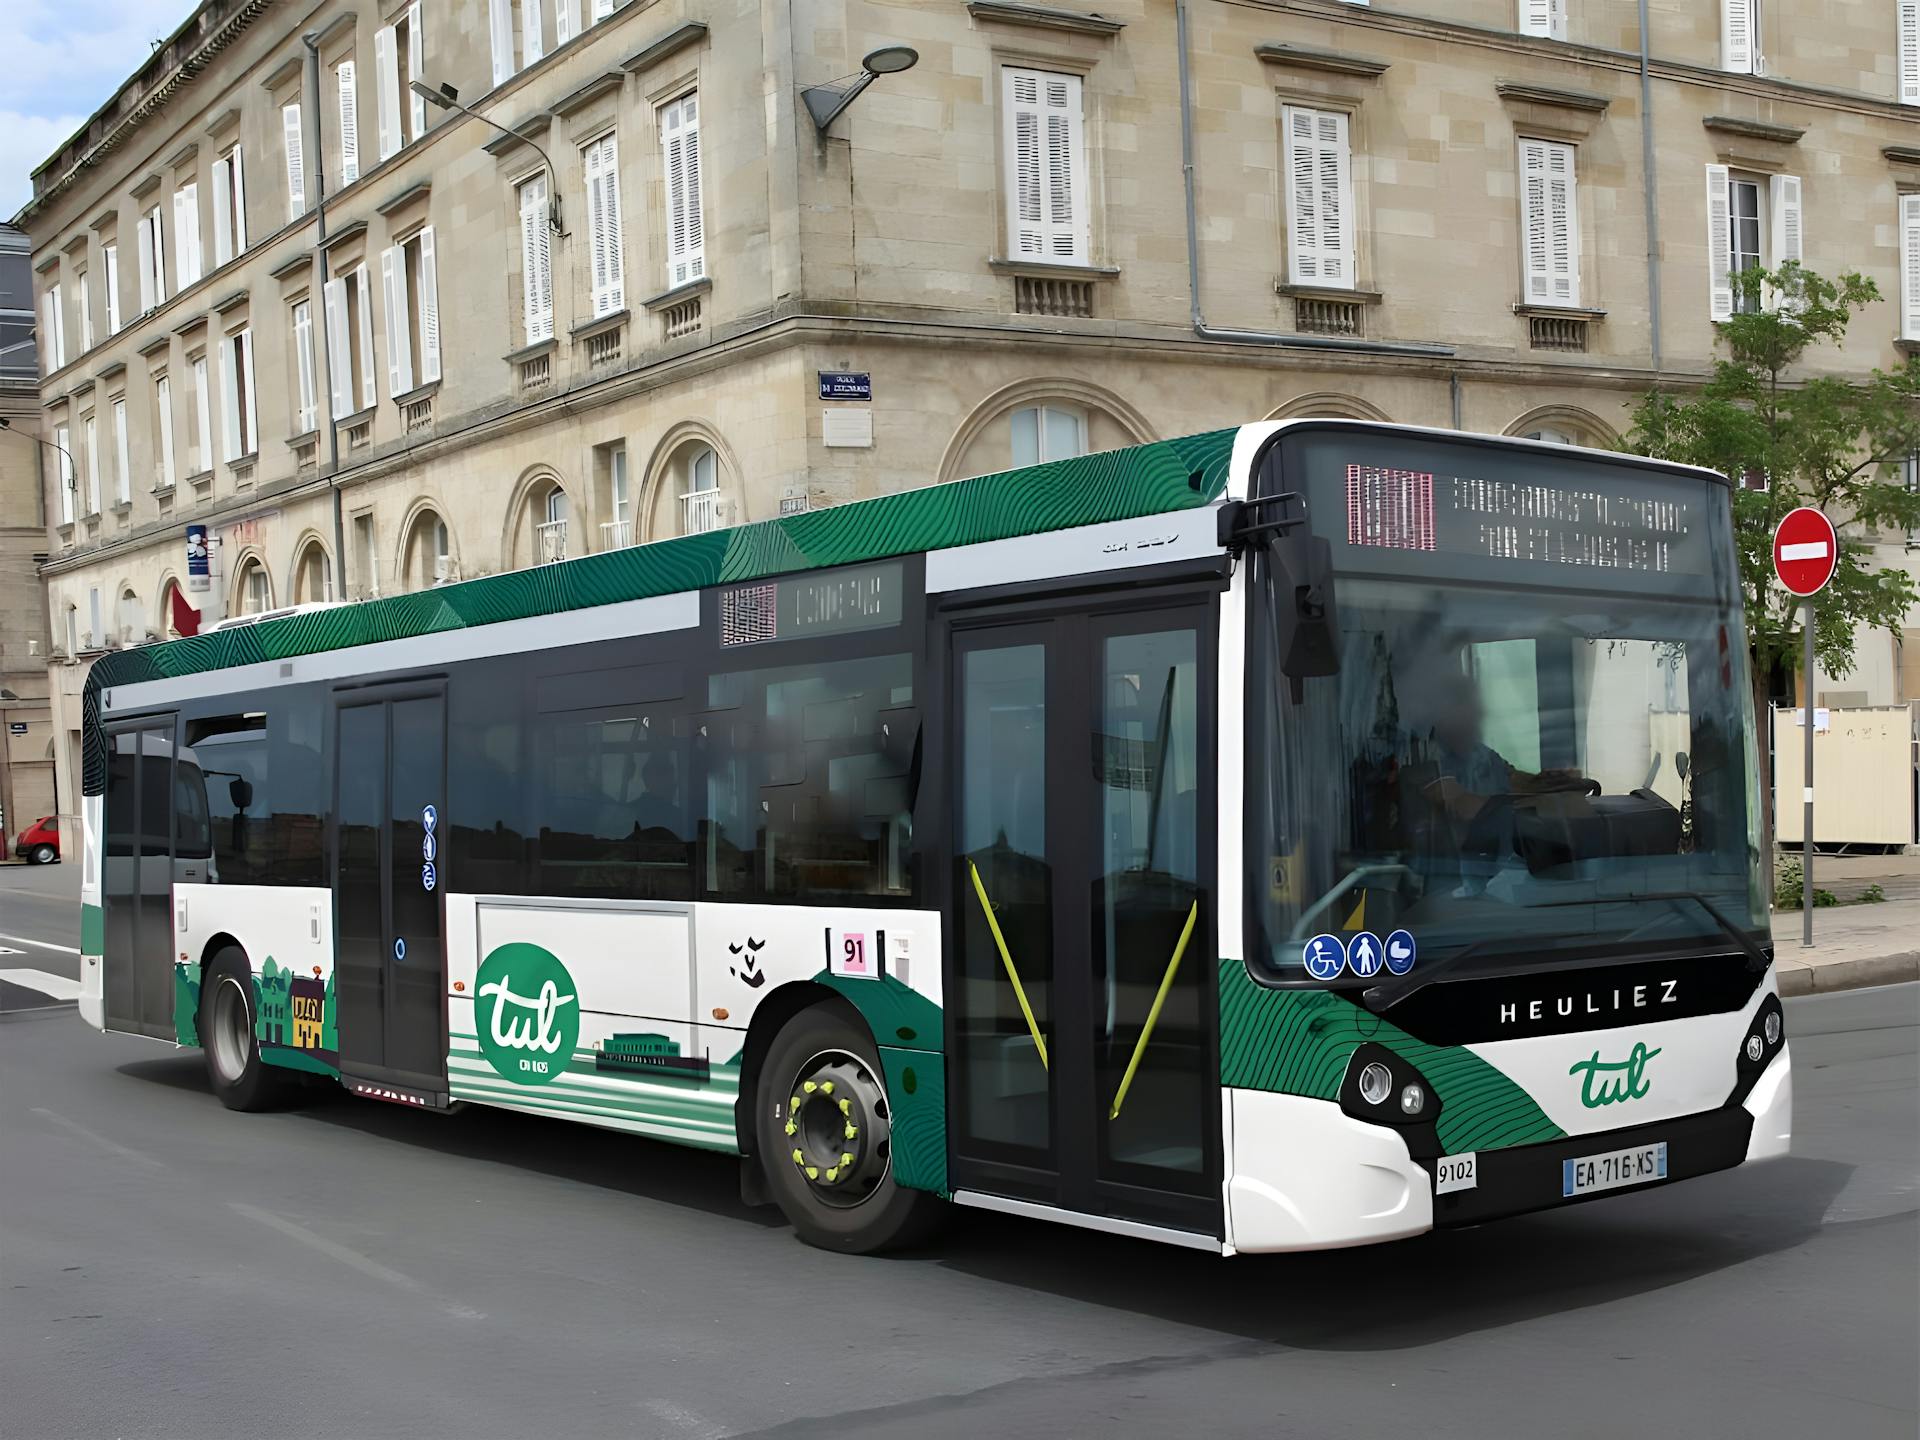 Mockup d'un bus portant la nouvelle identité de la marque TUL. On y distingue le nouveau logo et l'iconique couleur verte.